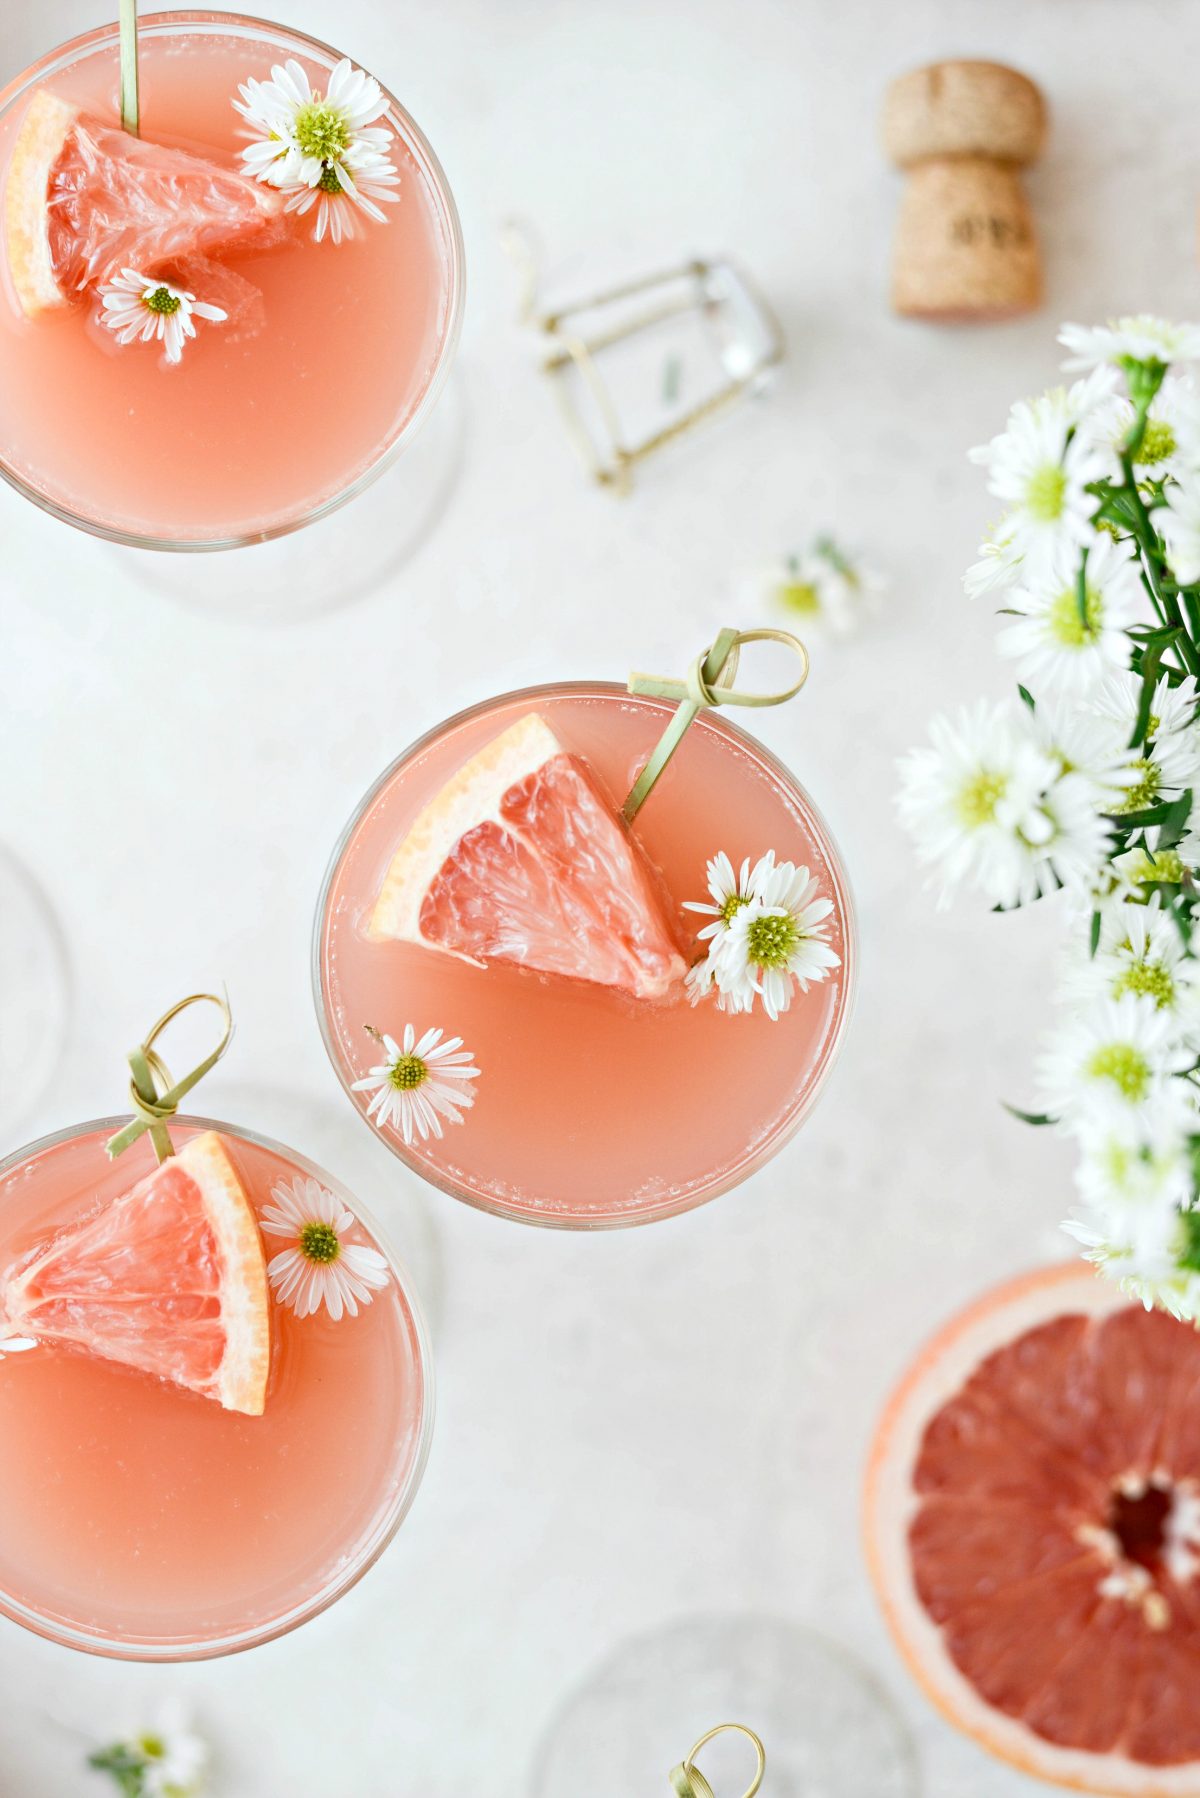 grapefrukt ros i Mimosa Mimosa l SimplyScratch.kom #vuxen # dryck #grapefrukt #rose #mimosa # påsk #brunch #mothersday